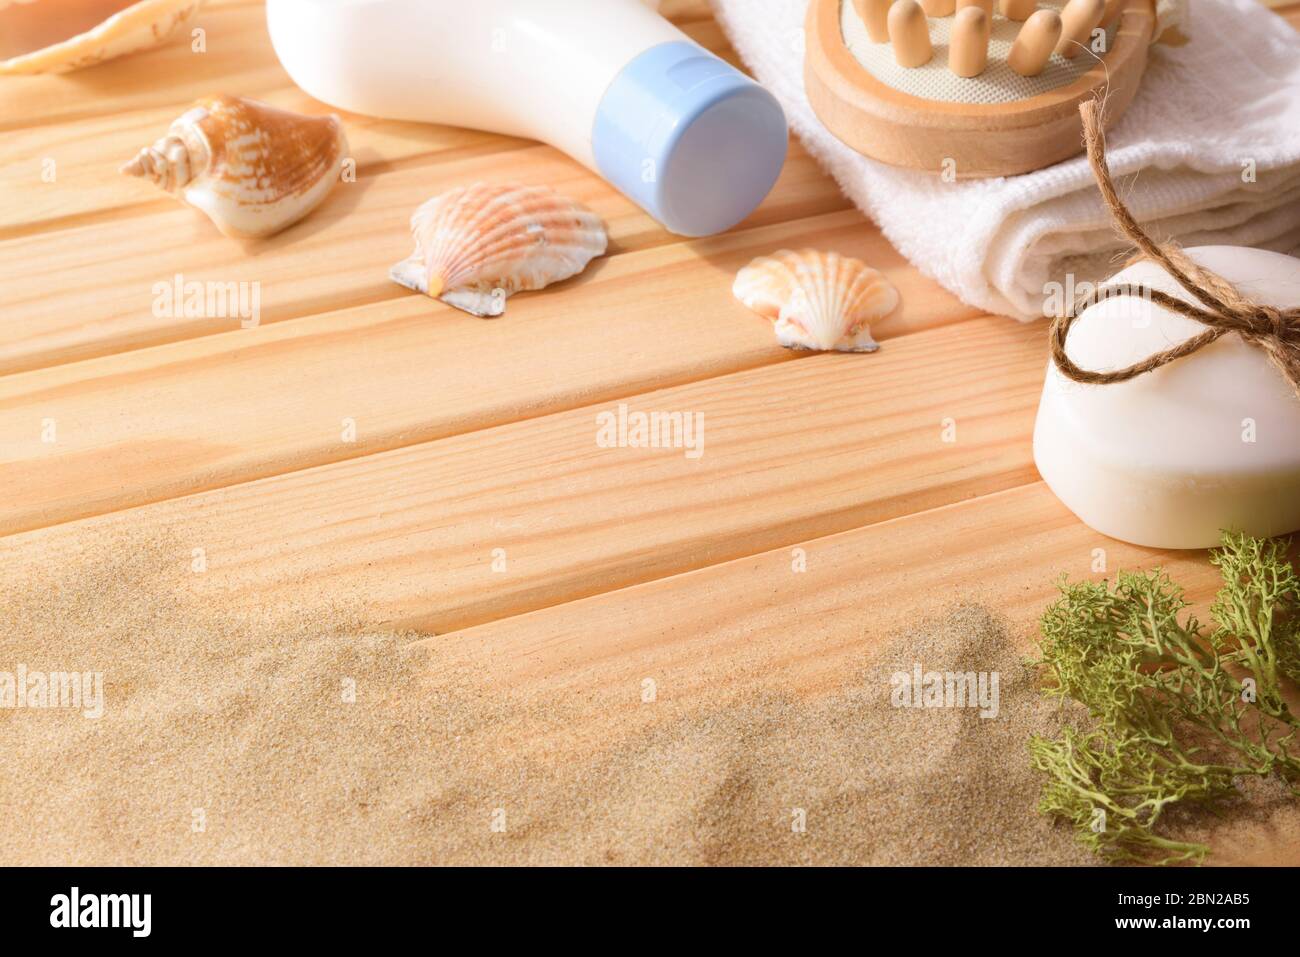 Thalassotherapie-Produkte für die Körperbehandlung auf Holzlatten Tisch mit Algen Muscheln und Sand verziert. Höhenansicht. Horizontale Zusammensetzung. Stockfoto